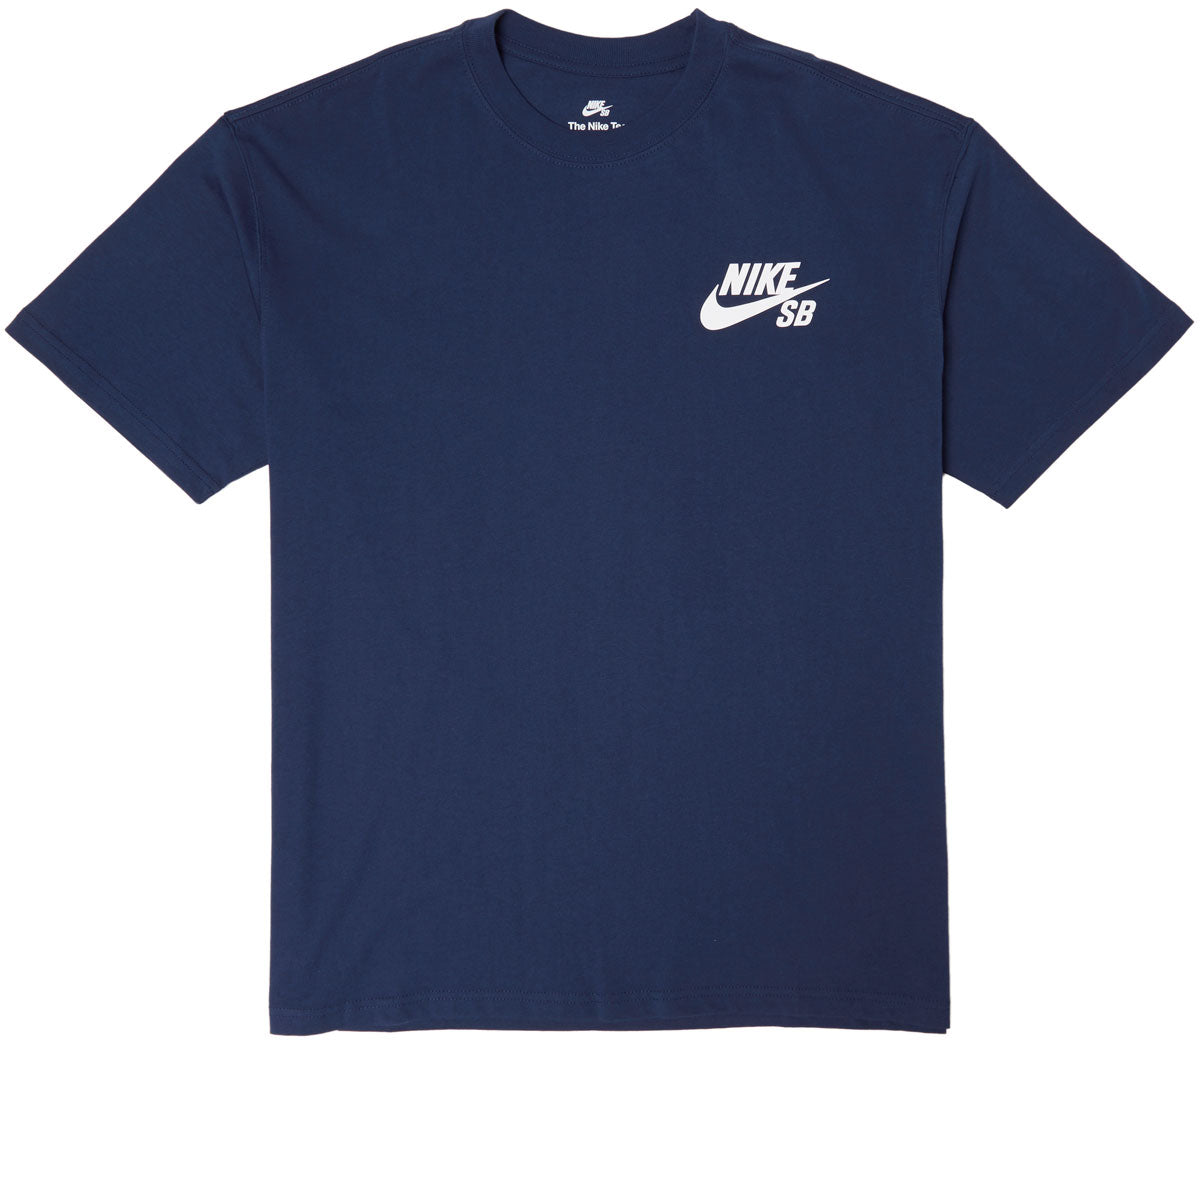 Nike SB Logo T-Shirt - Midnight Navy image 1